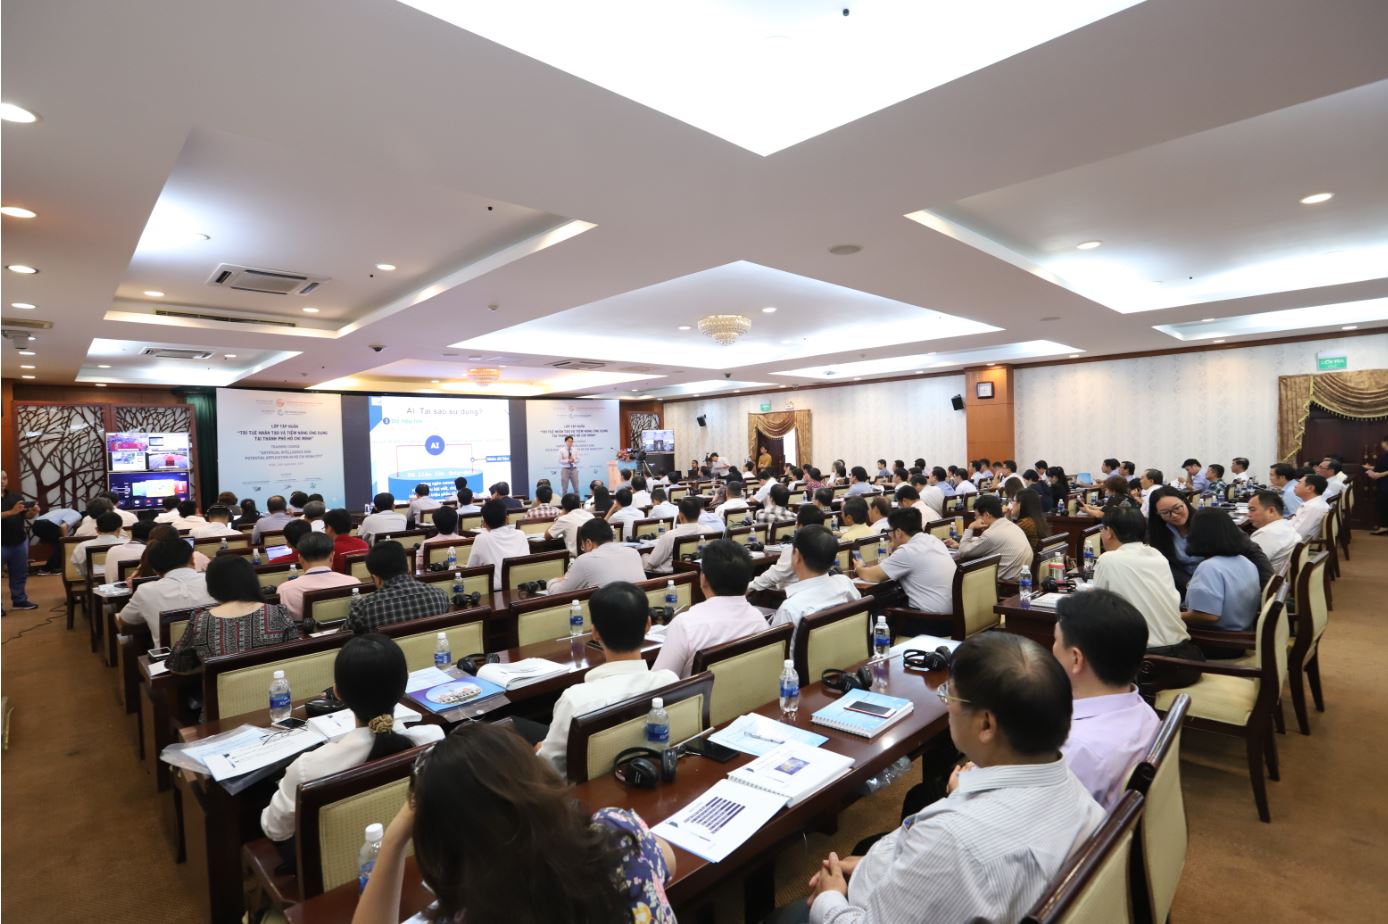 Tập huấn về Trí tuệ nhân tạo và tiềm năng ứng dụng tại Thành phố Hồ Chí Minh